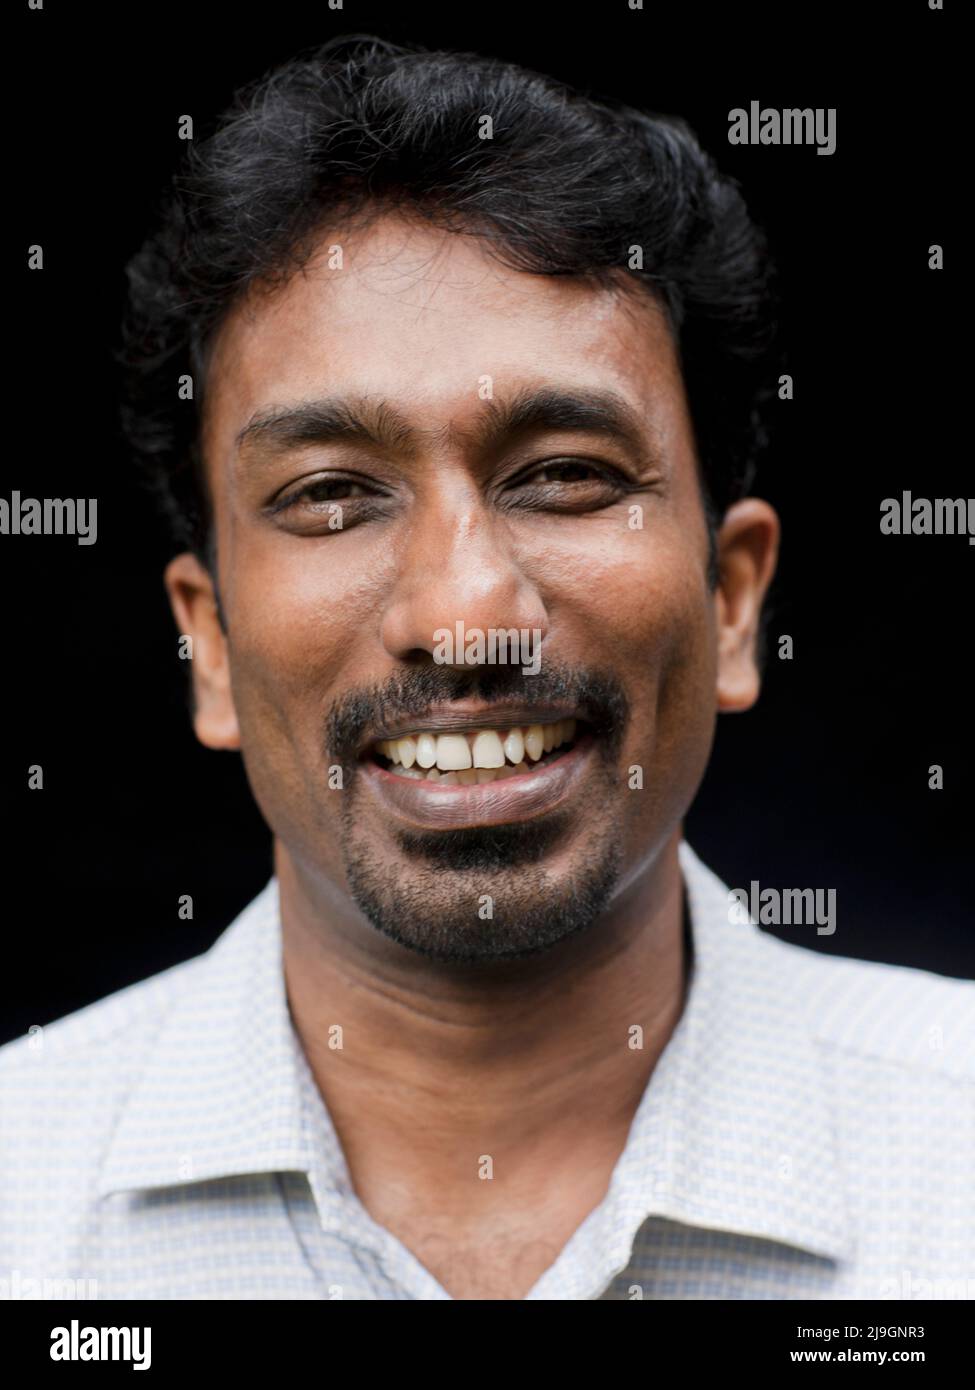 Ein ayurvedischer Arzt posiert für ein Porträt gegen einen schwarzen Backgroiund. Kairali Ayurveda Health Resort, Palakkad, Kerala, Indien. Stockfoto